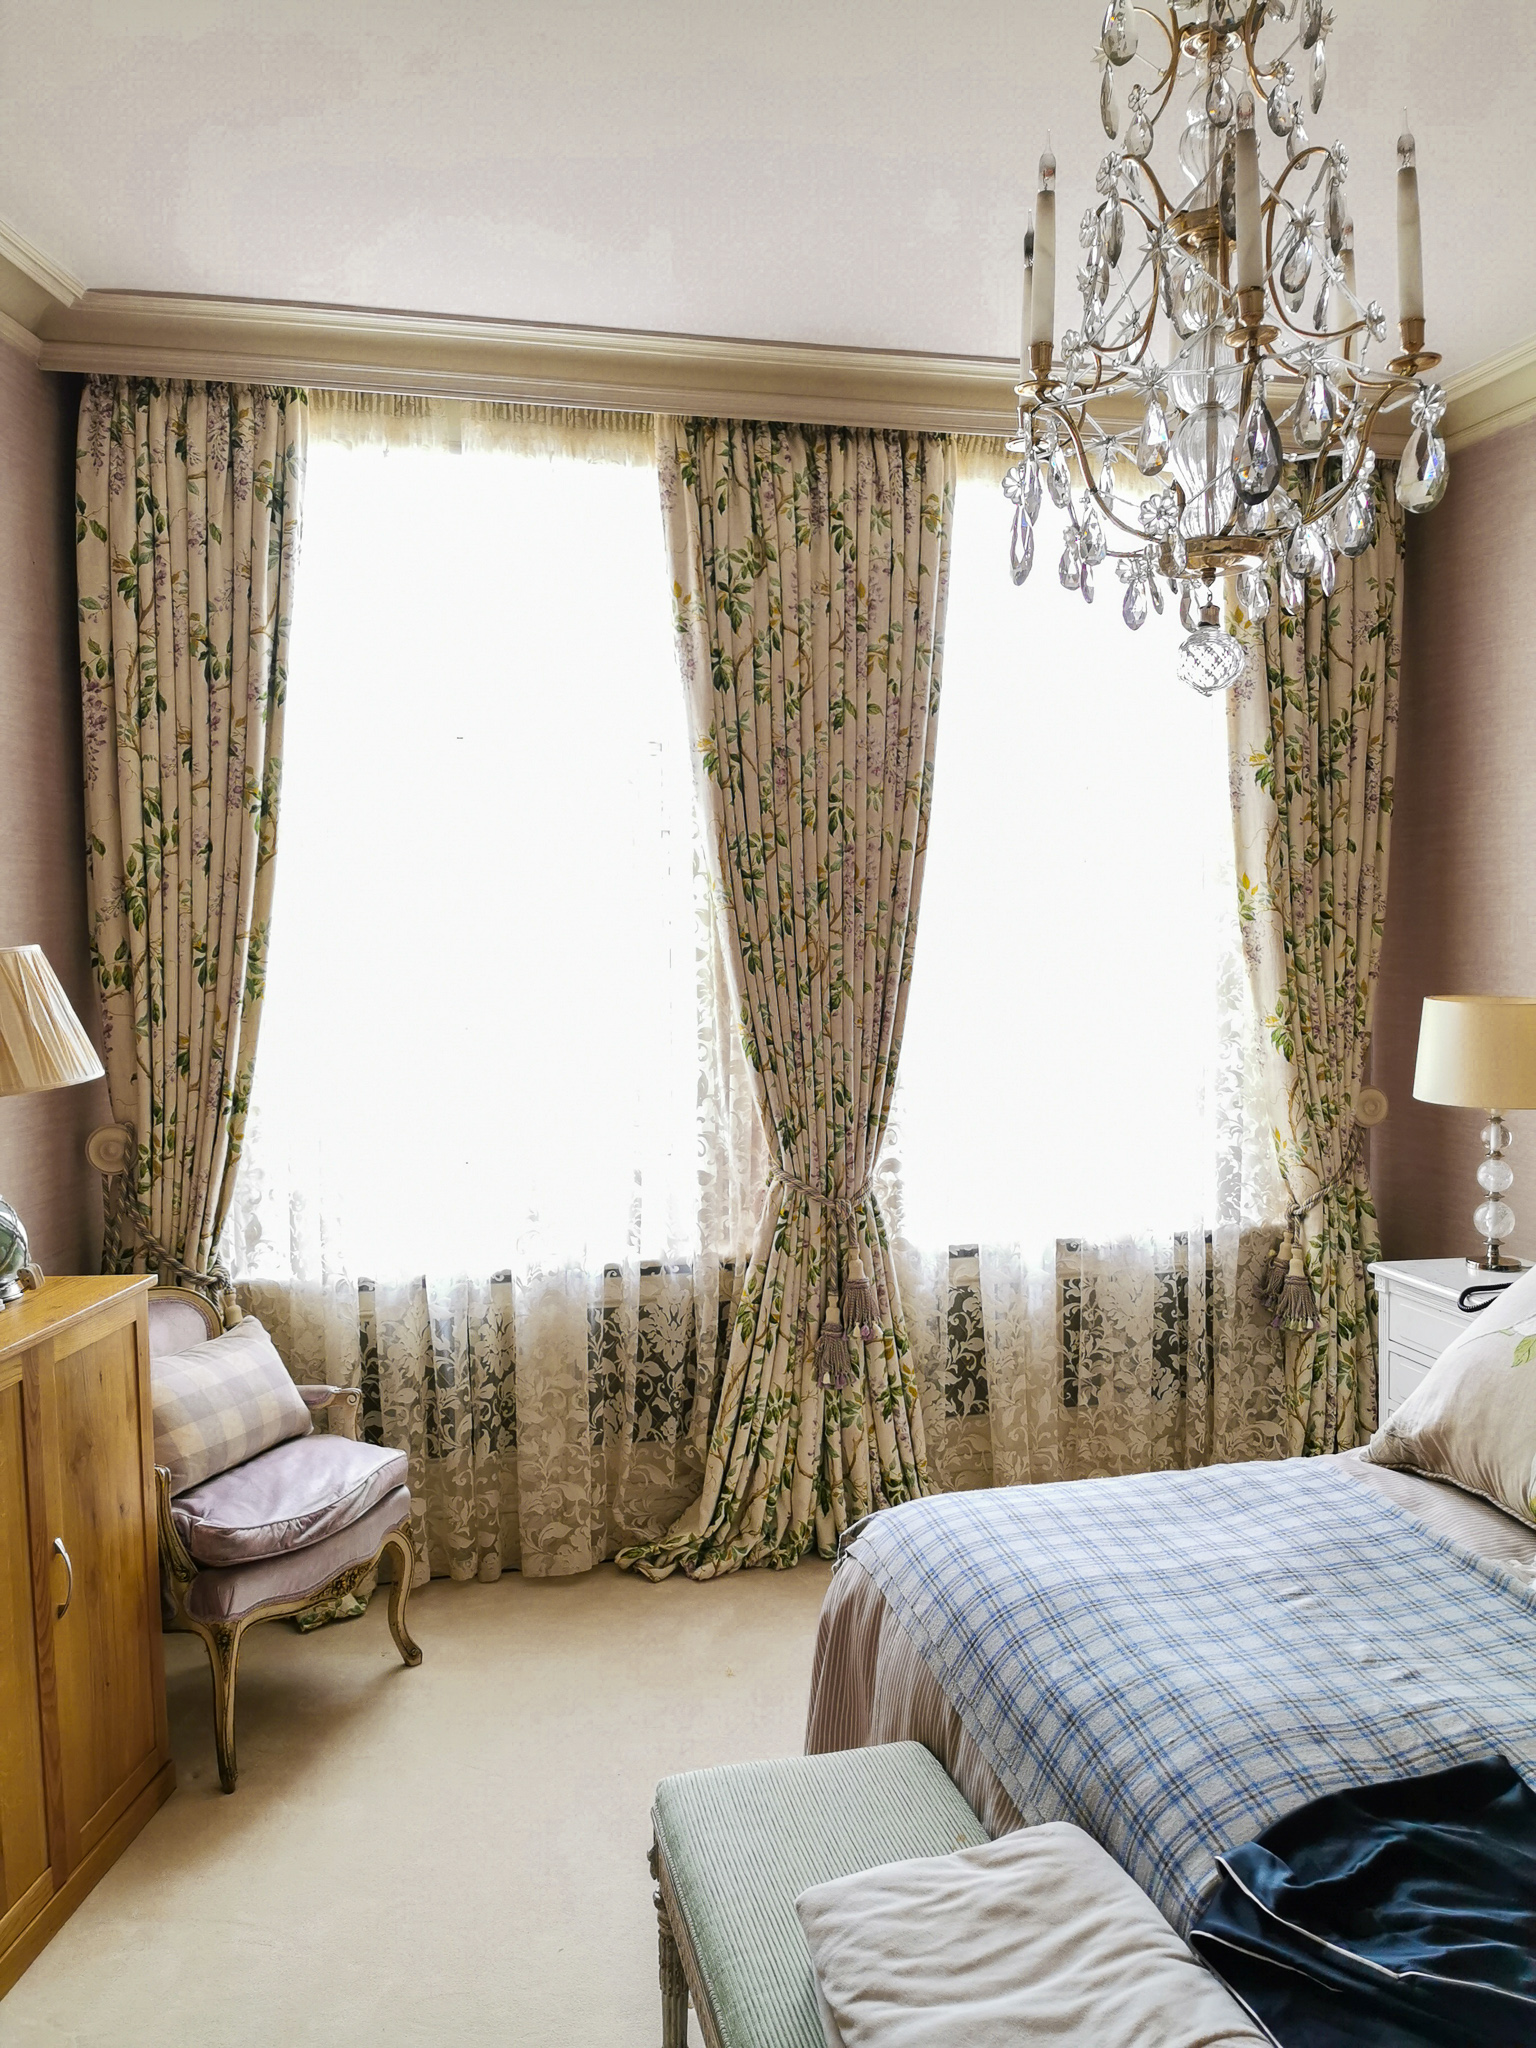 Plush dressed bedroom curtains